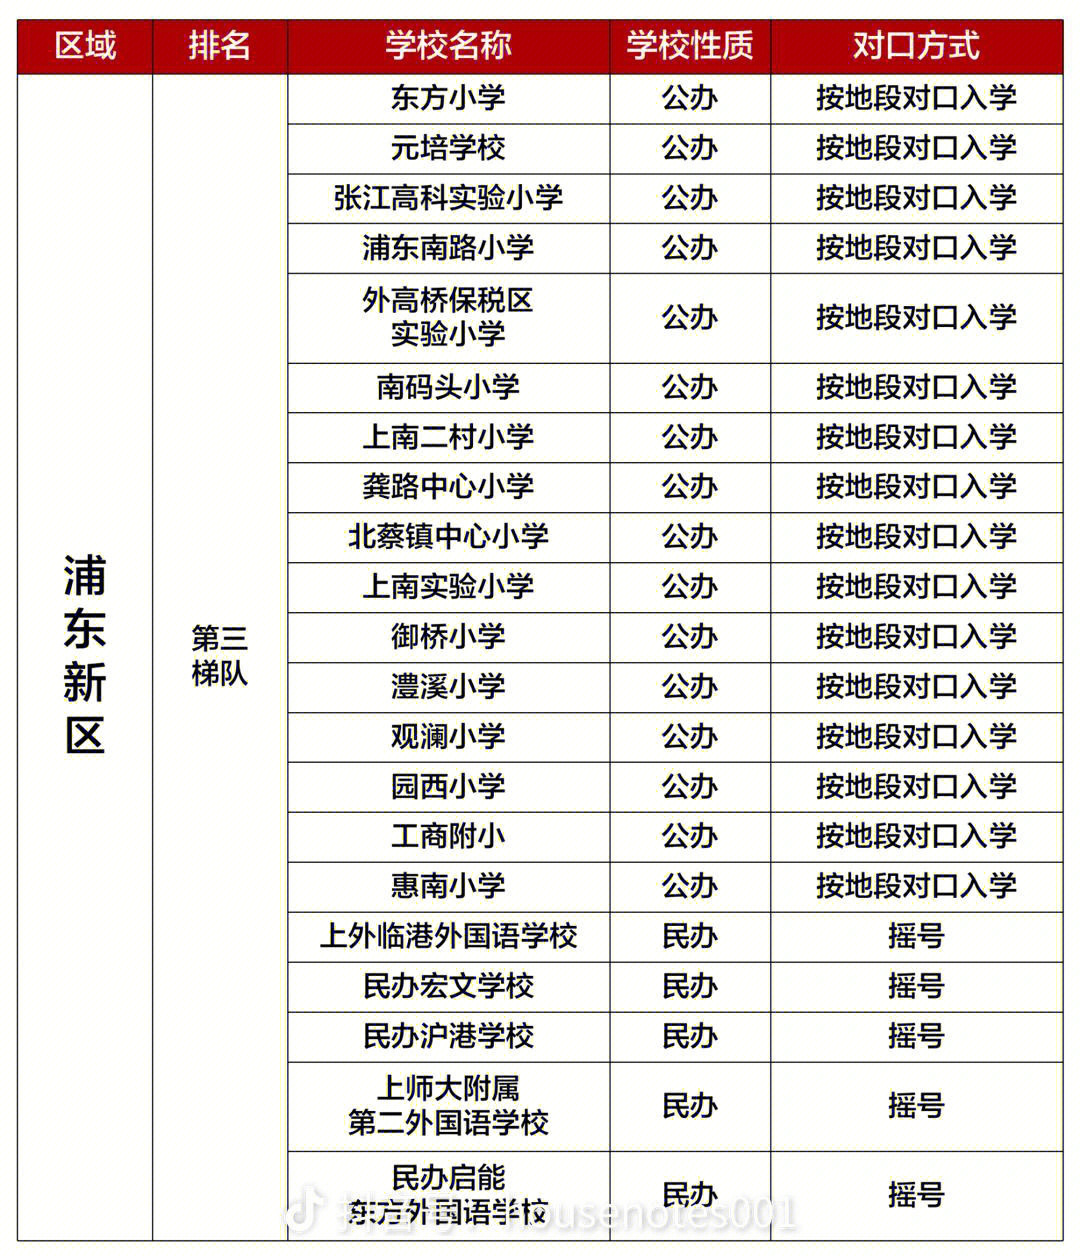 上海16区小学排名和对口情况下集